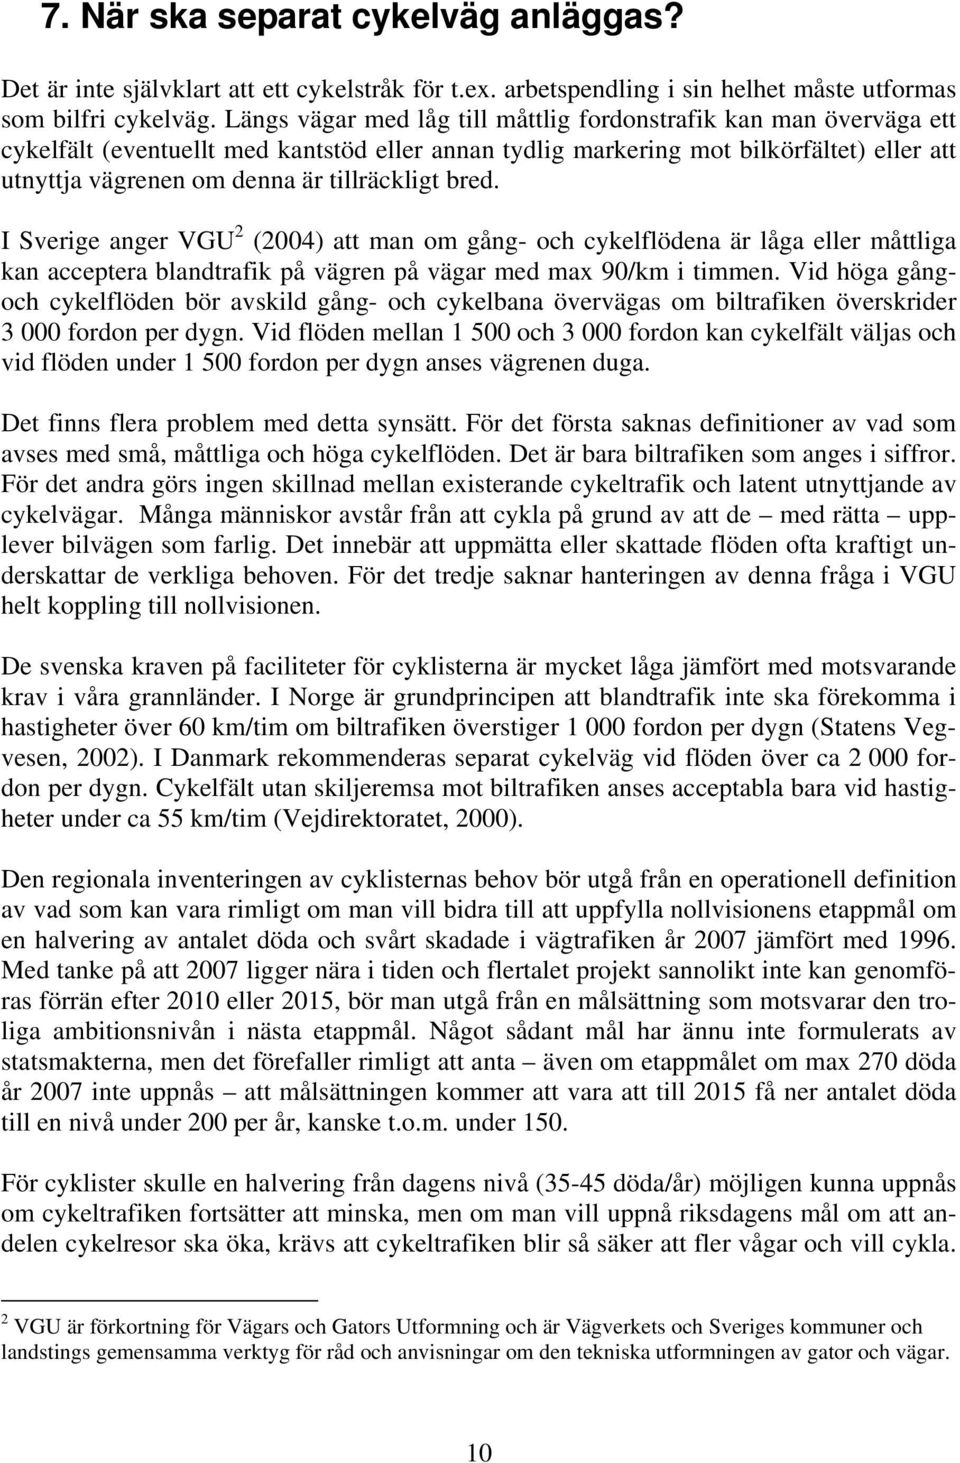 tillräckligt bred. I Sverige anger VGU 2 (2004) att man om gång- och cykelflödena är låga eller måttliga kan acceptera blandtrafik på vägren på vägar med max 90/km i timmen.